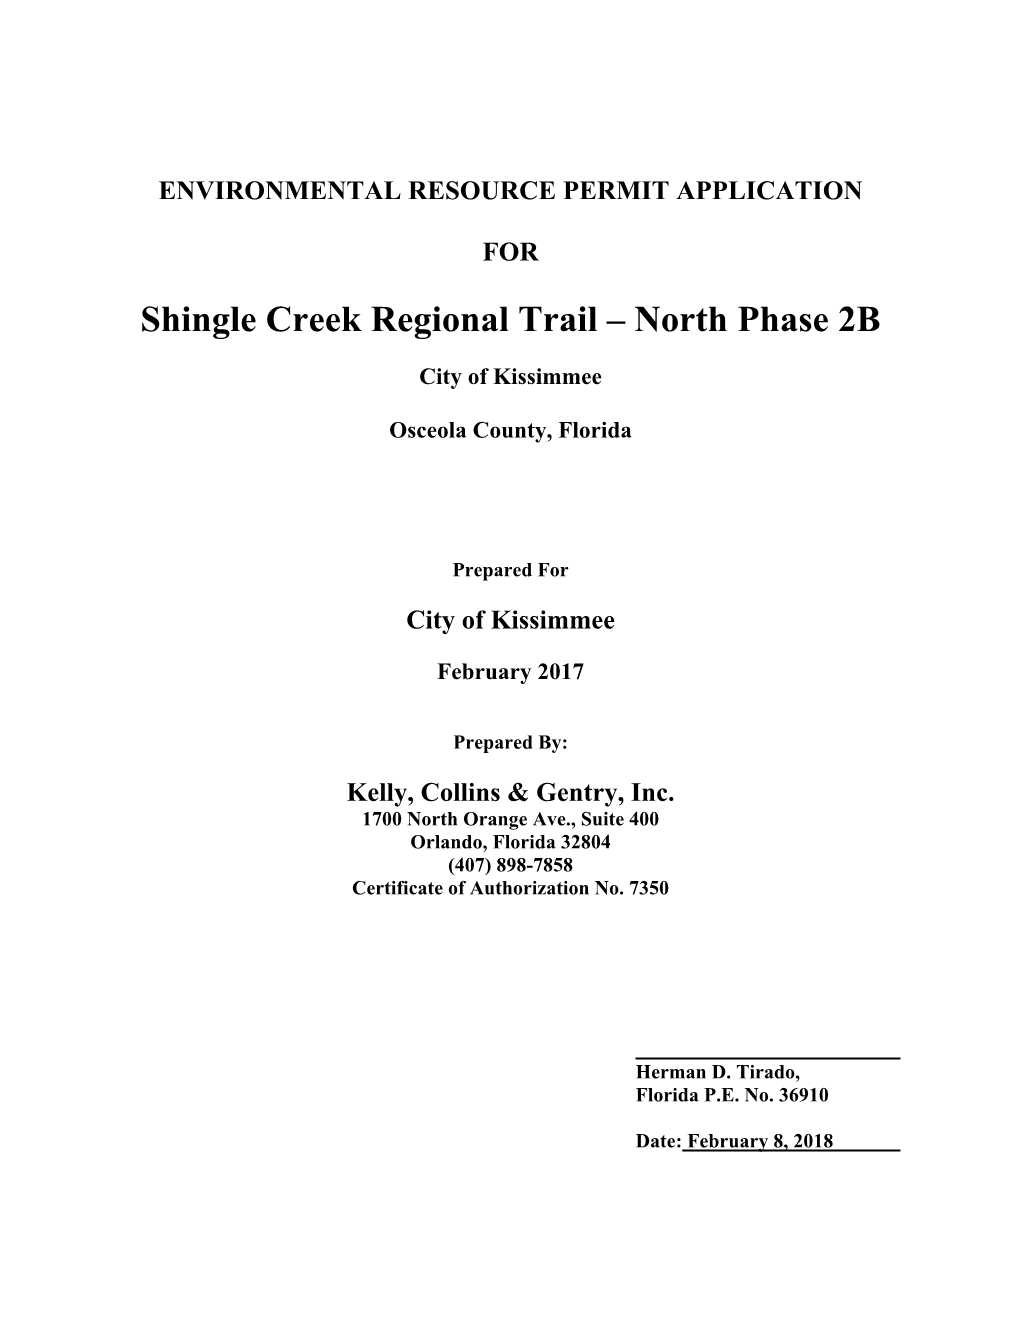 Shingle Creek Regional Trail – North Phase 2B